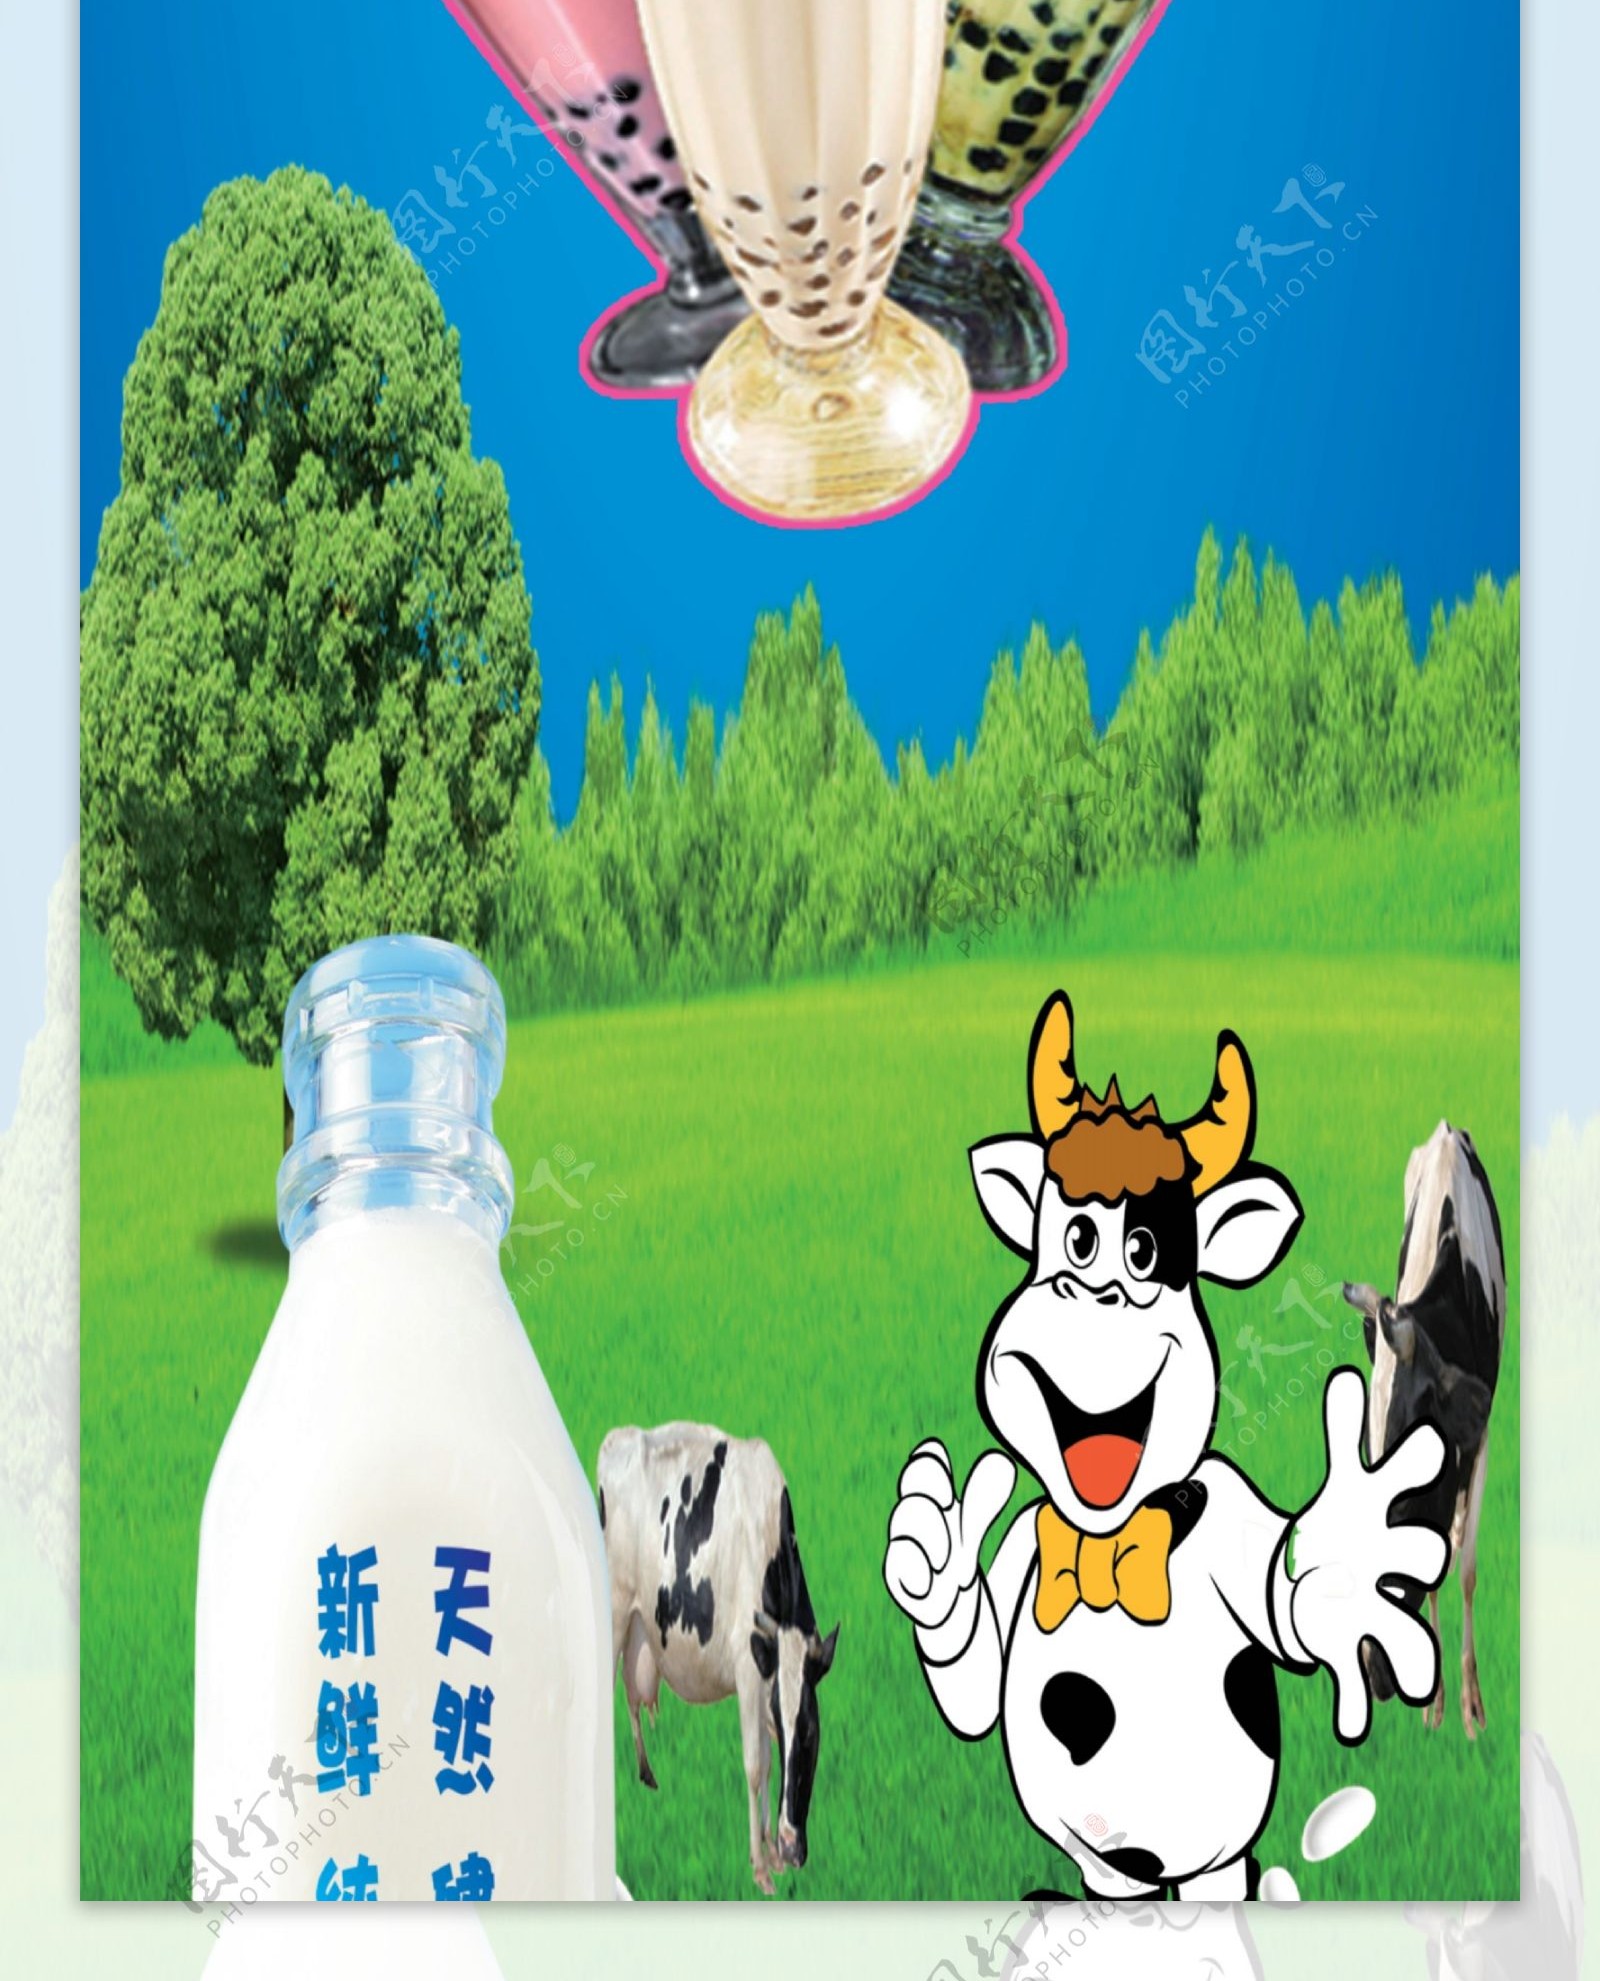 鲜奶吧海报图片